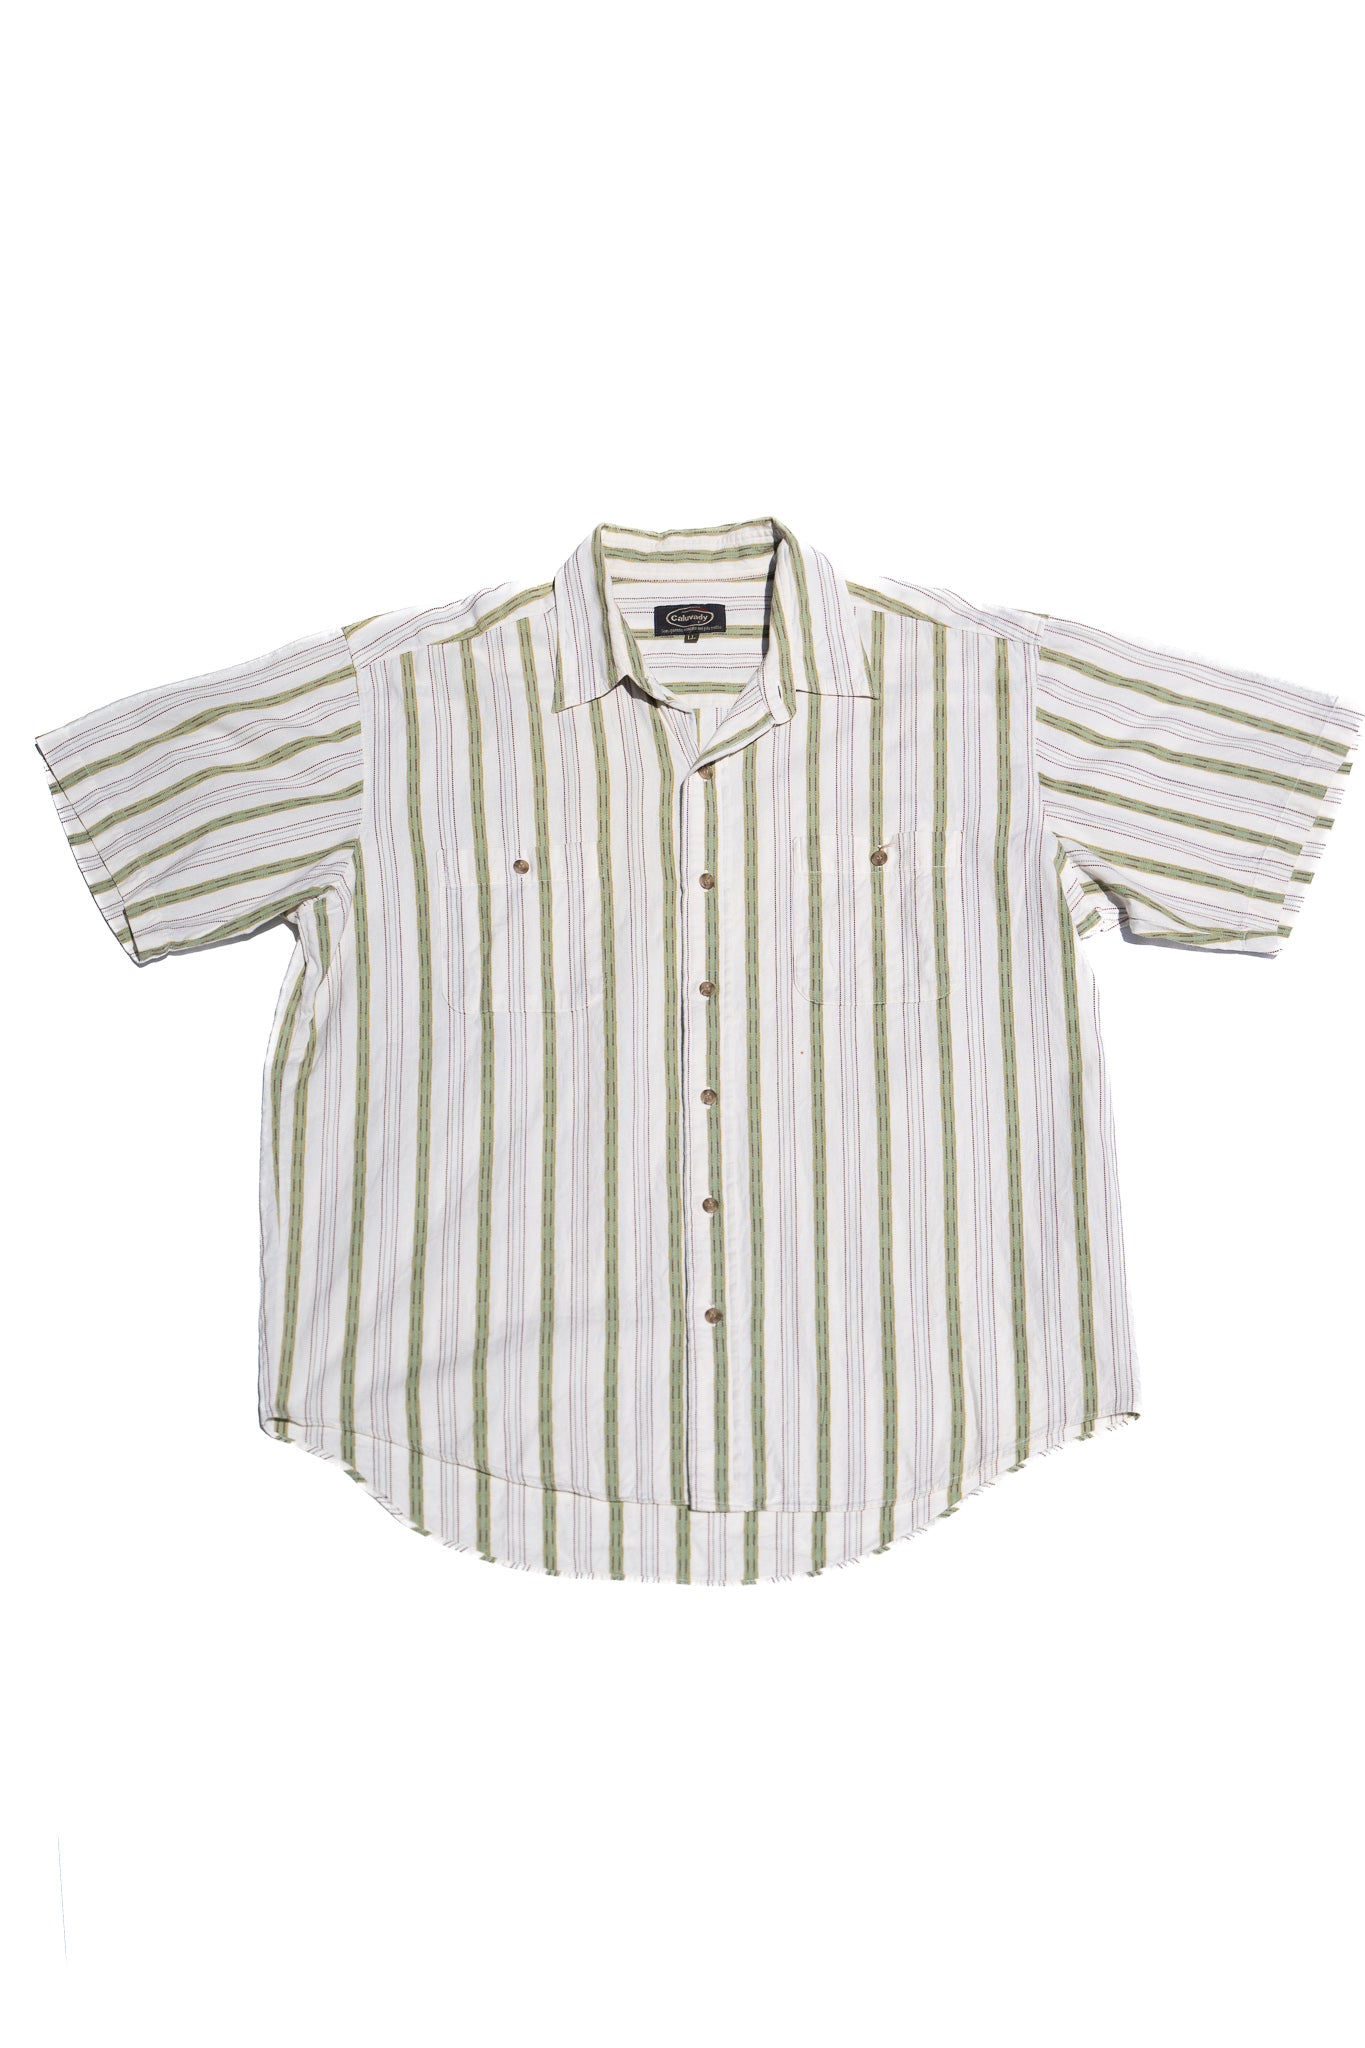 Green Striped Short Sleeve Shirt